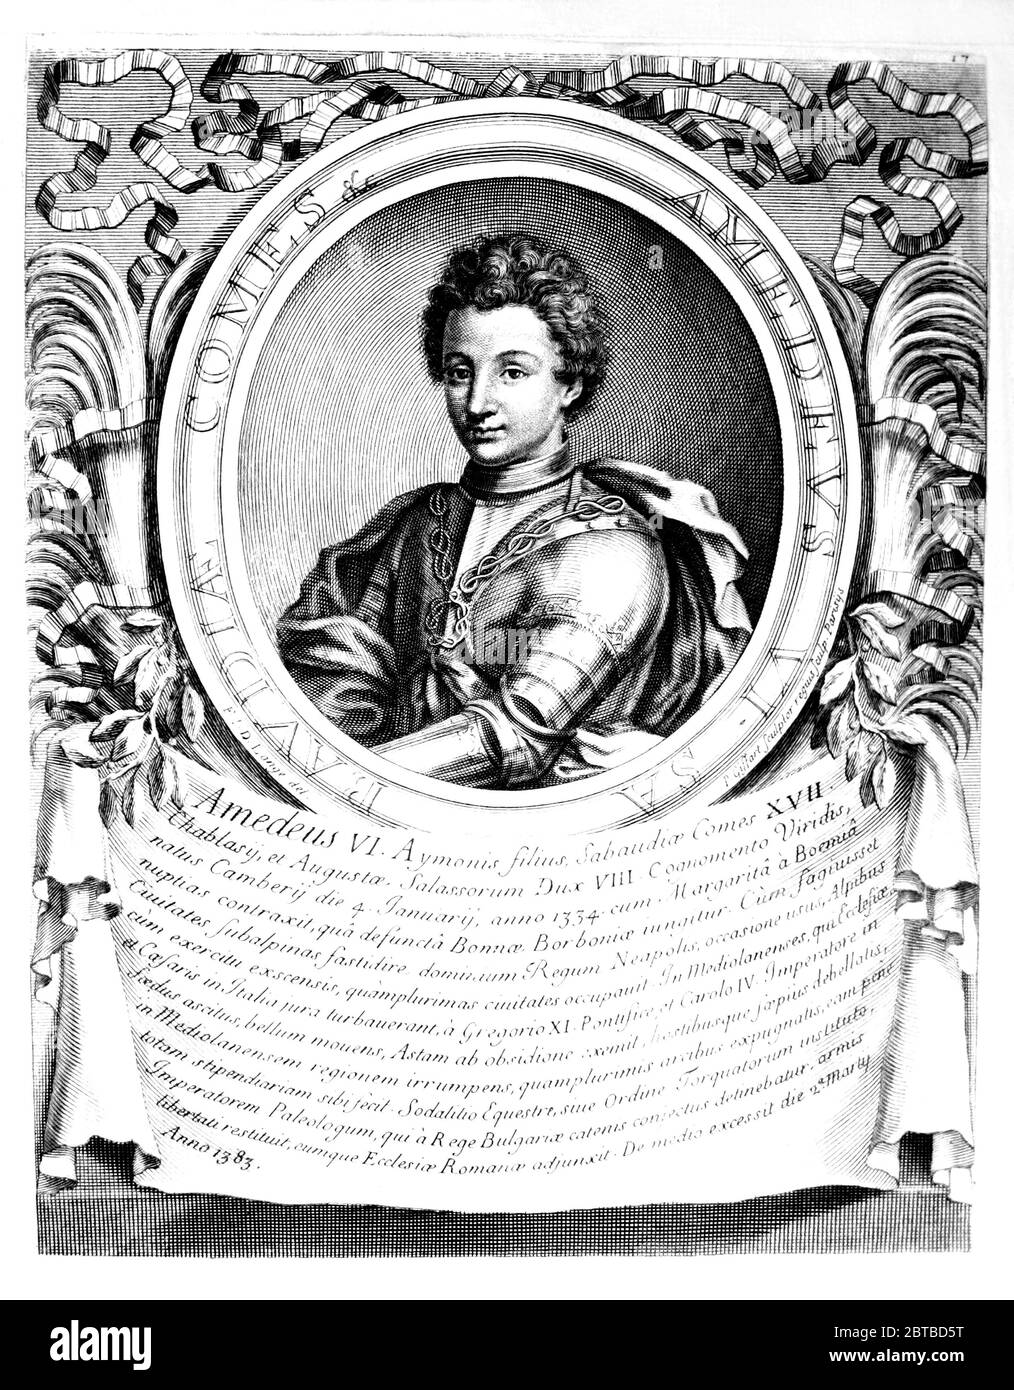 1360 ca, ITALIA: Il Principe amedeo VI di SAVOIA aka CONTE VERDE ( 1334 - 1383 ). Ritratto di D. Lange, - Principe Amadeo , inciso da P. Giffart , Parigi , 1702 . - AMEDEUS - Conte Verde - Duc de SAVOYE - SAVOY - CASA SAVOIA - ITALIA - FRANCIA - REALI - Nobiltà italiana - SAVOY - NOBILTÀ - REGALITÀ - STORIA - FOTO STORICHE ---- Archivio GBB Foto Stock